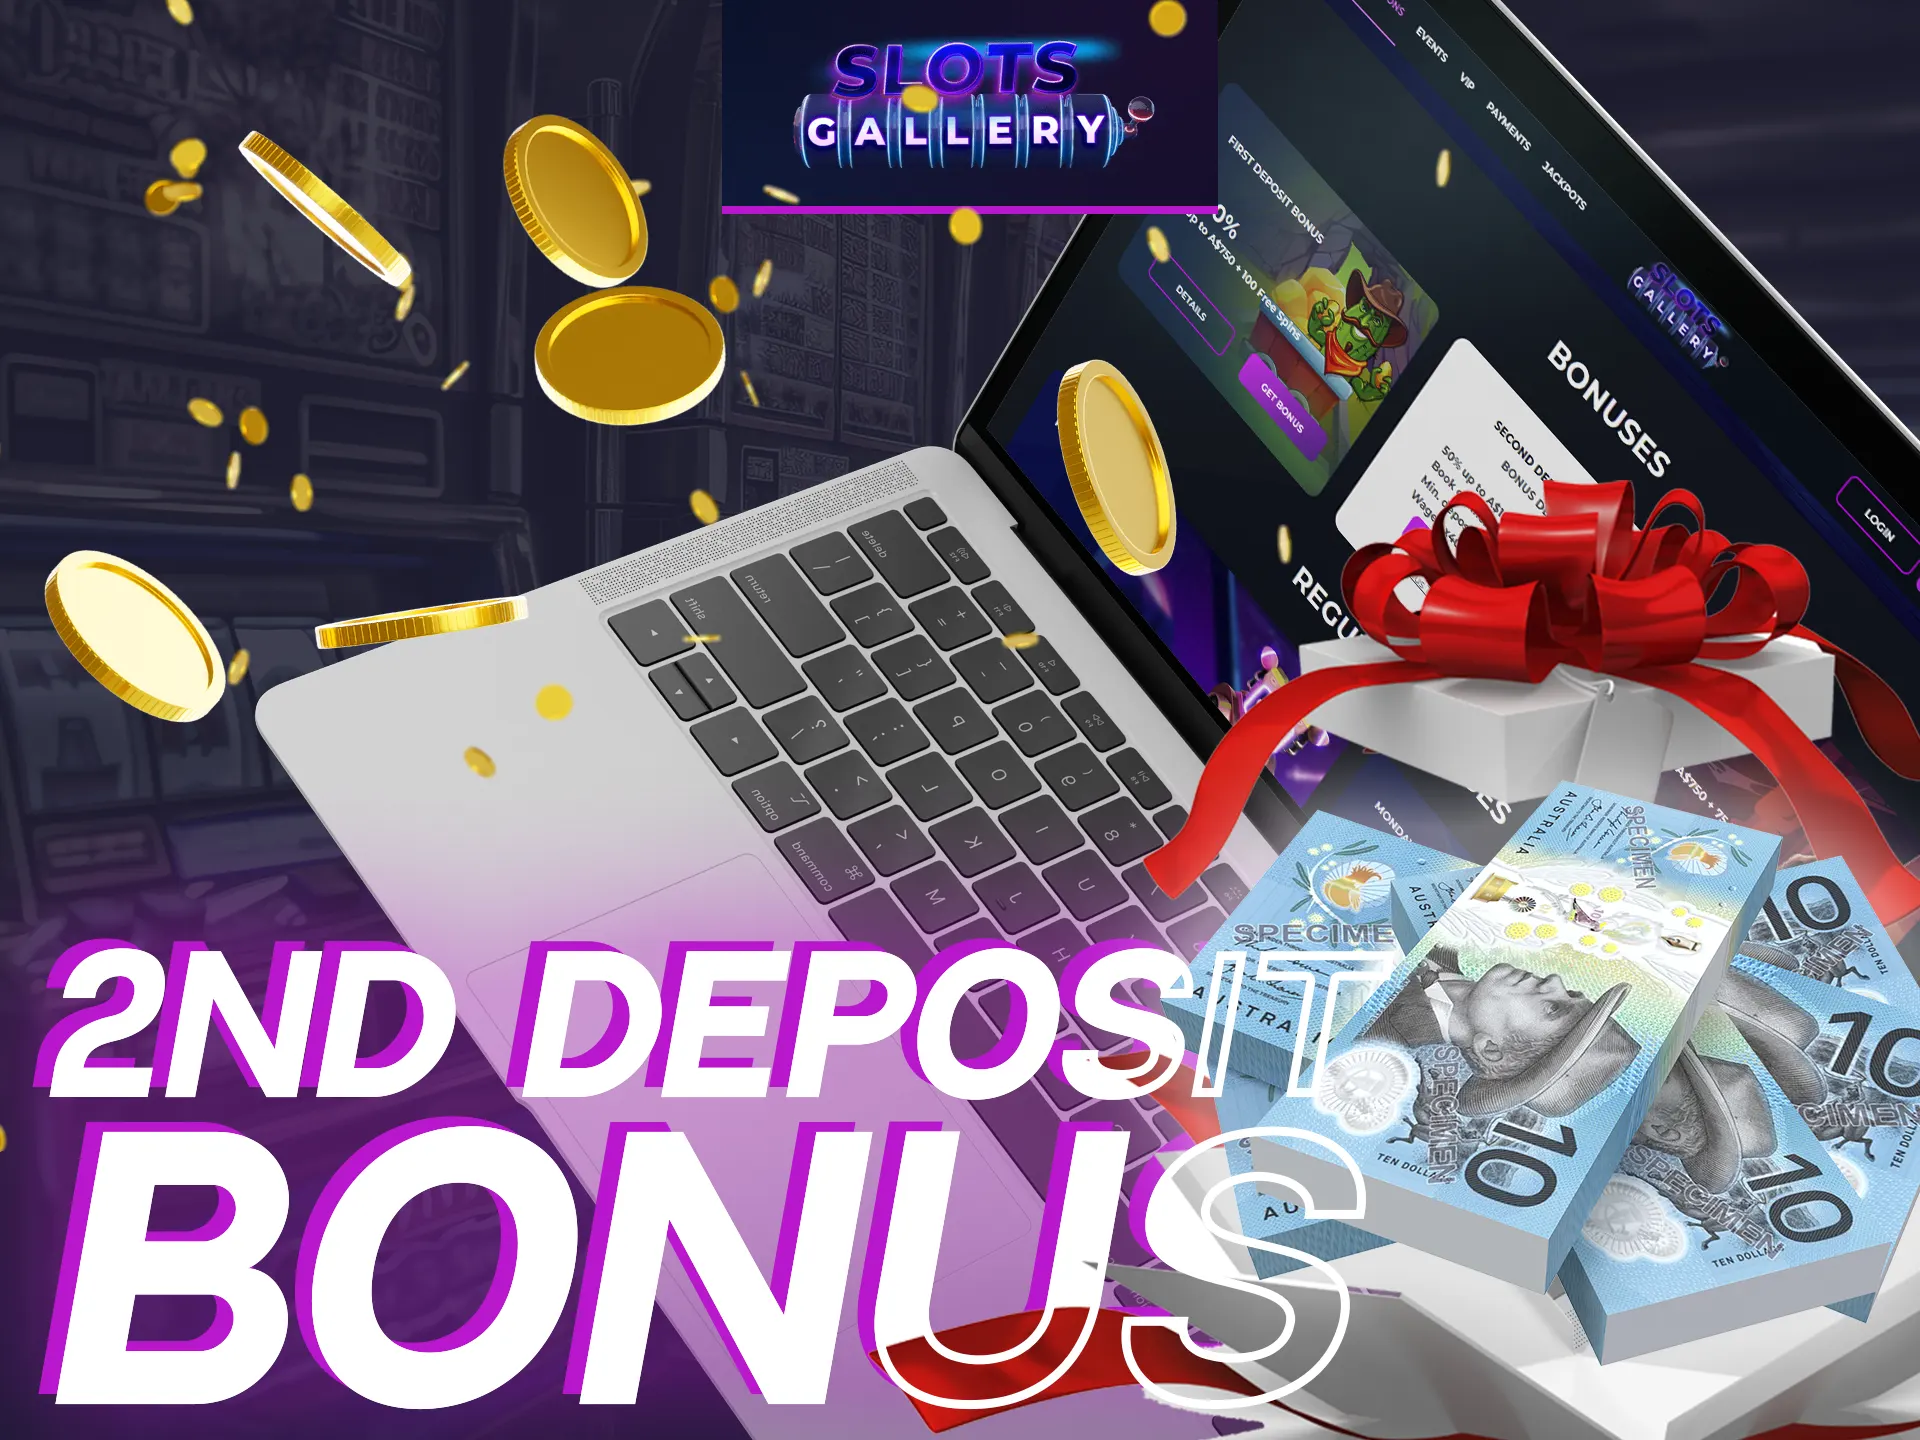 Use 2nd deposit bonus to multiplicate your deposit.